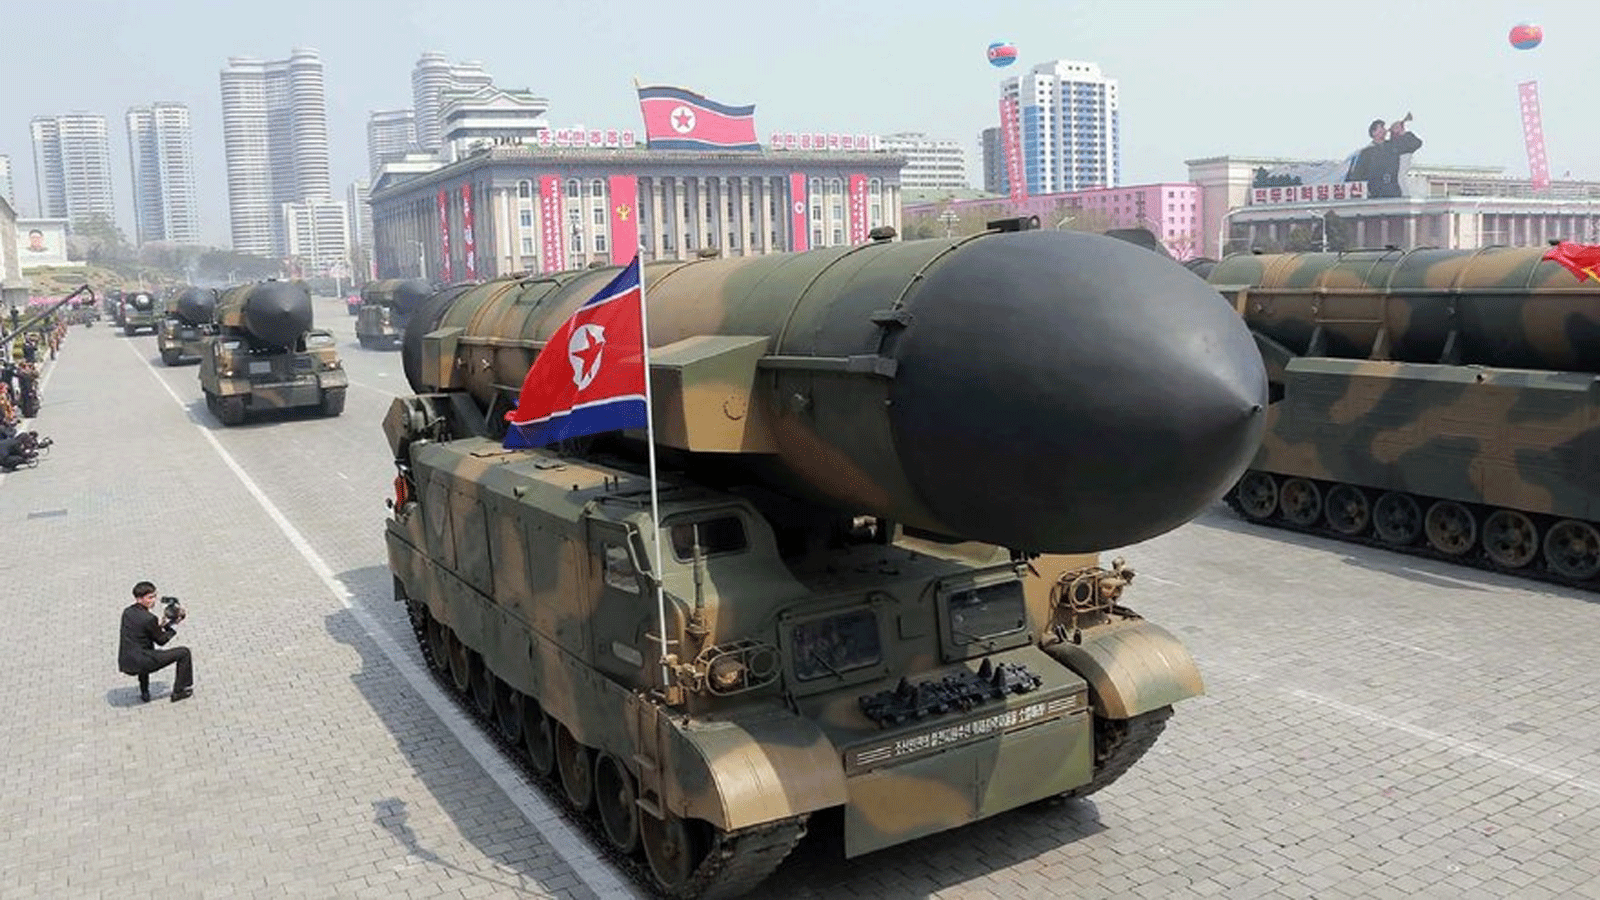 سيول تُعلِن فشل عملية إطلاق كوريا شمالية لصاروخ بالستي عابر للقارات